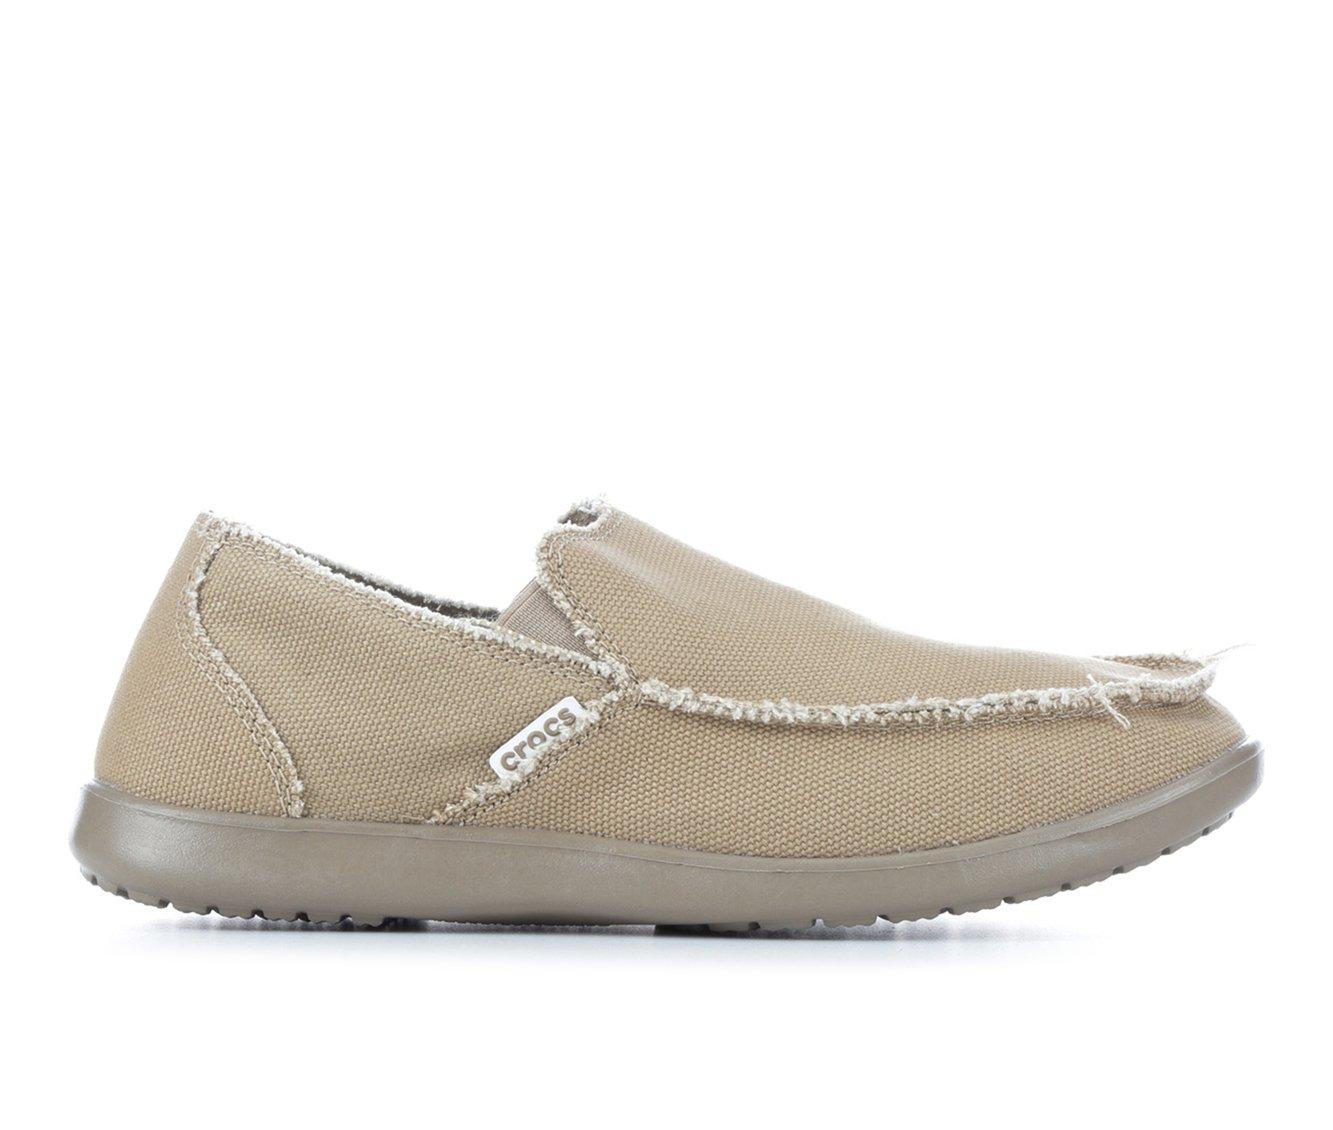 Men's Crocs Santa Cruz Casual Shoes